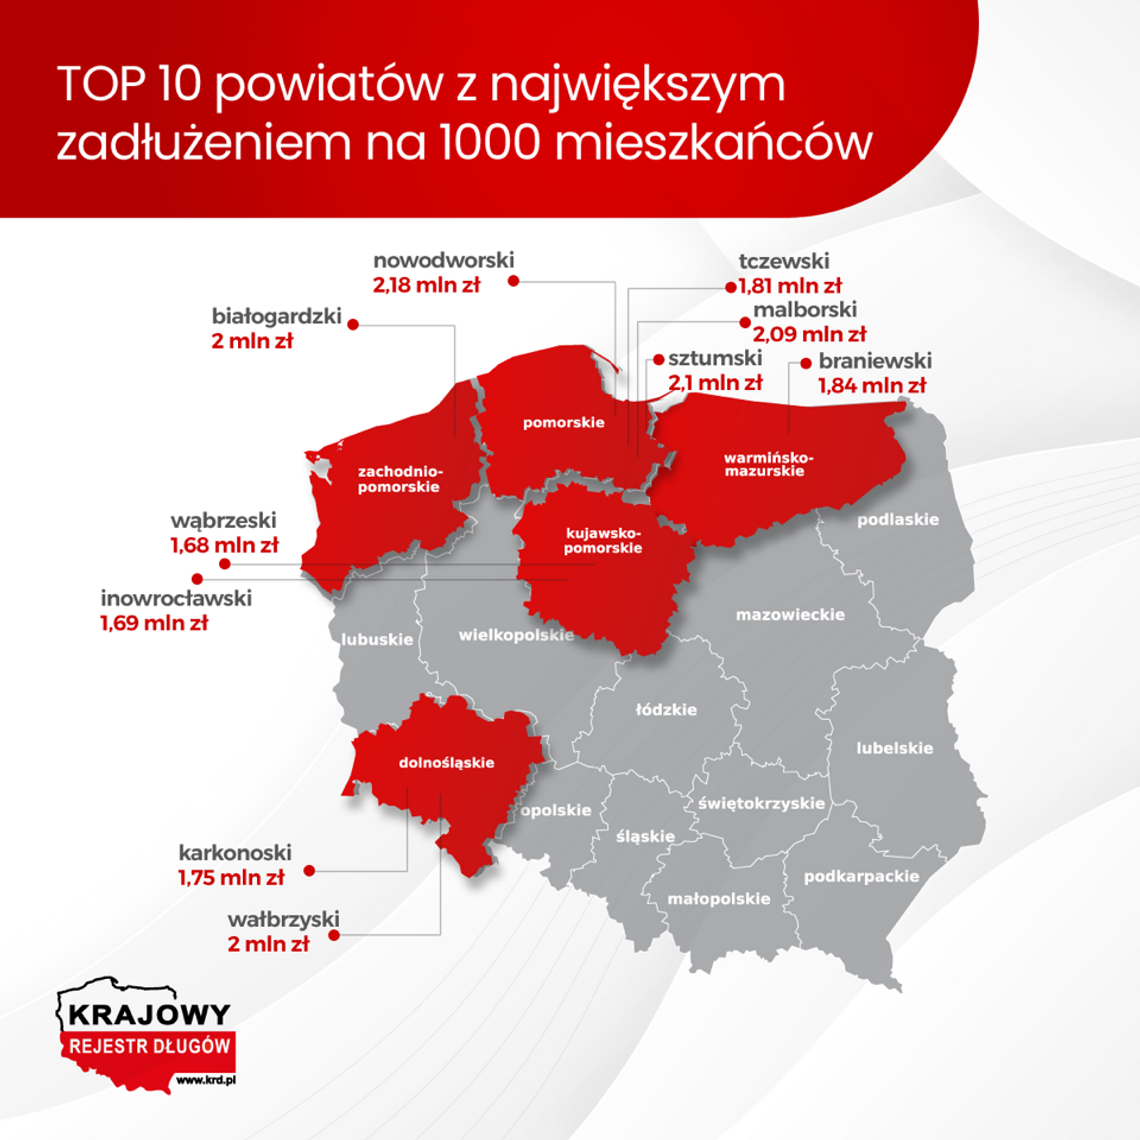 Krajowy Rejestr Długów: w tych powiatach jest największe zadłużenie na 1000 mieszkańców. Sztumski i malborski w czołówce krajowej